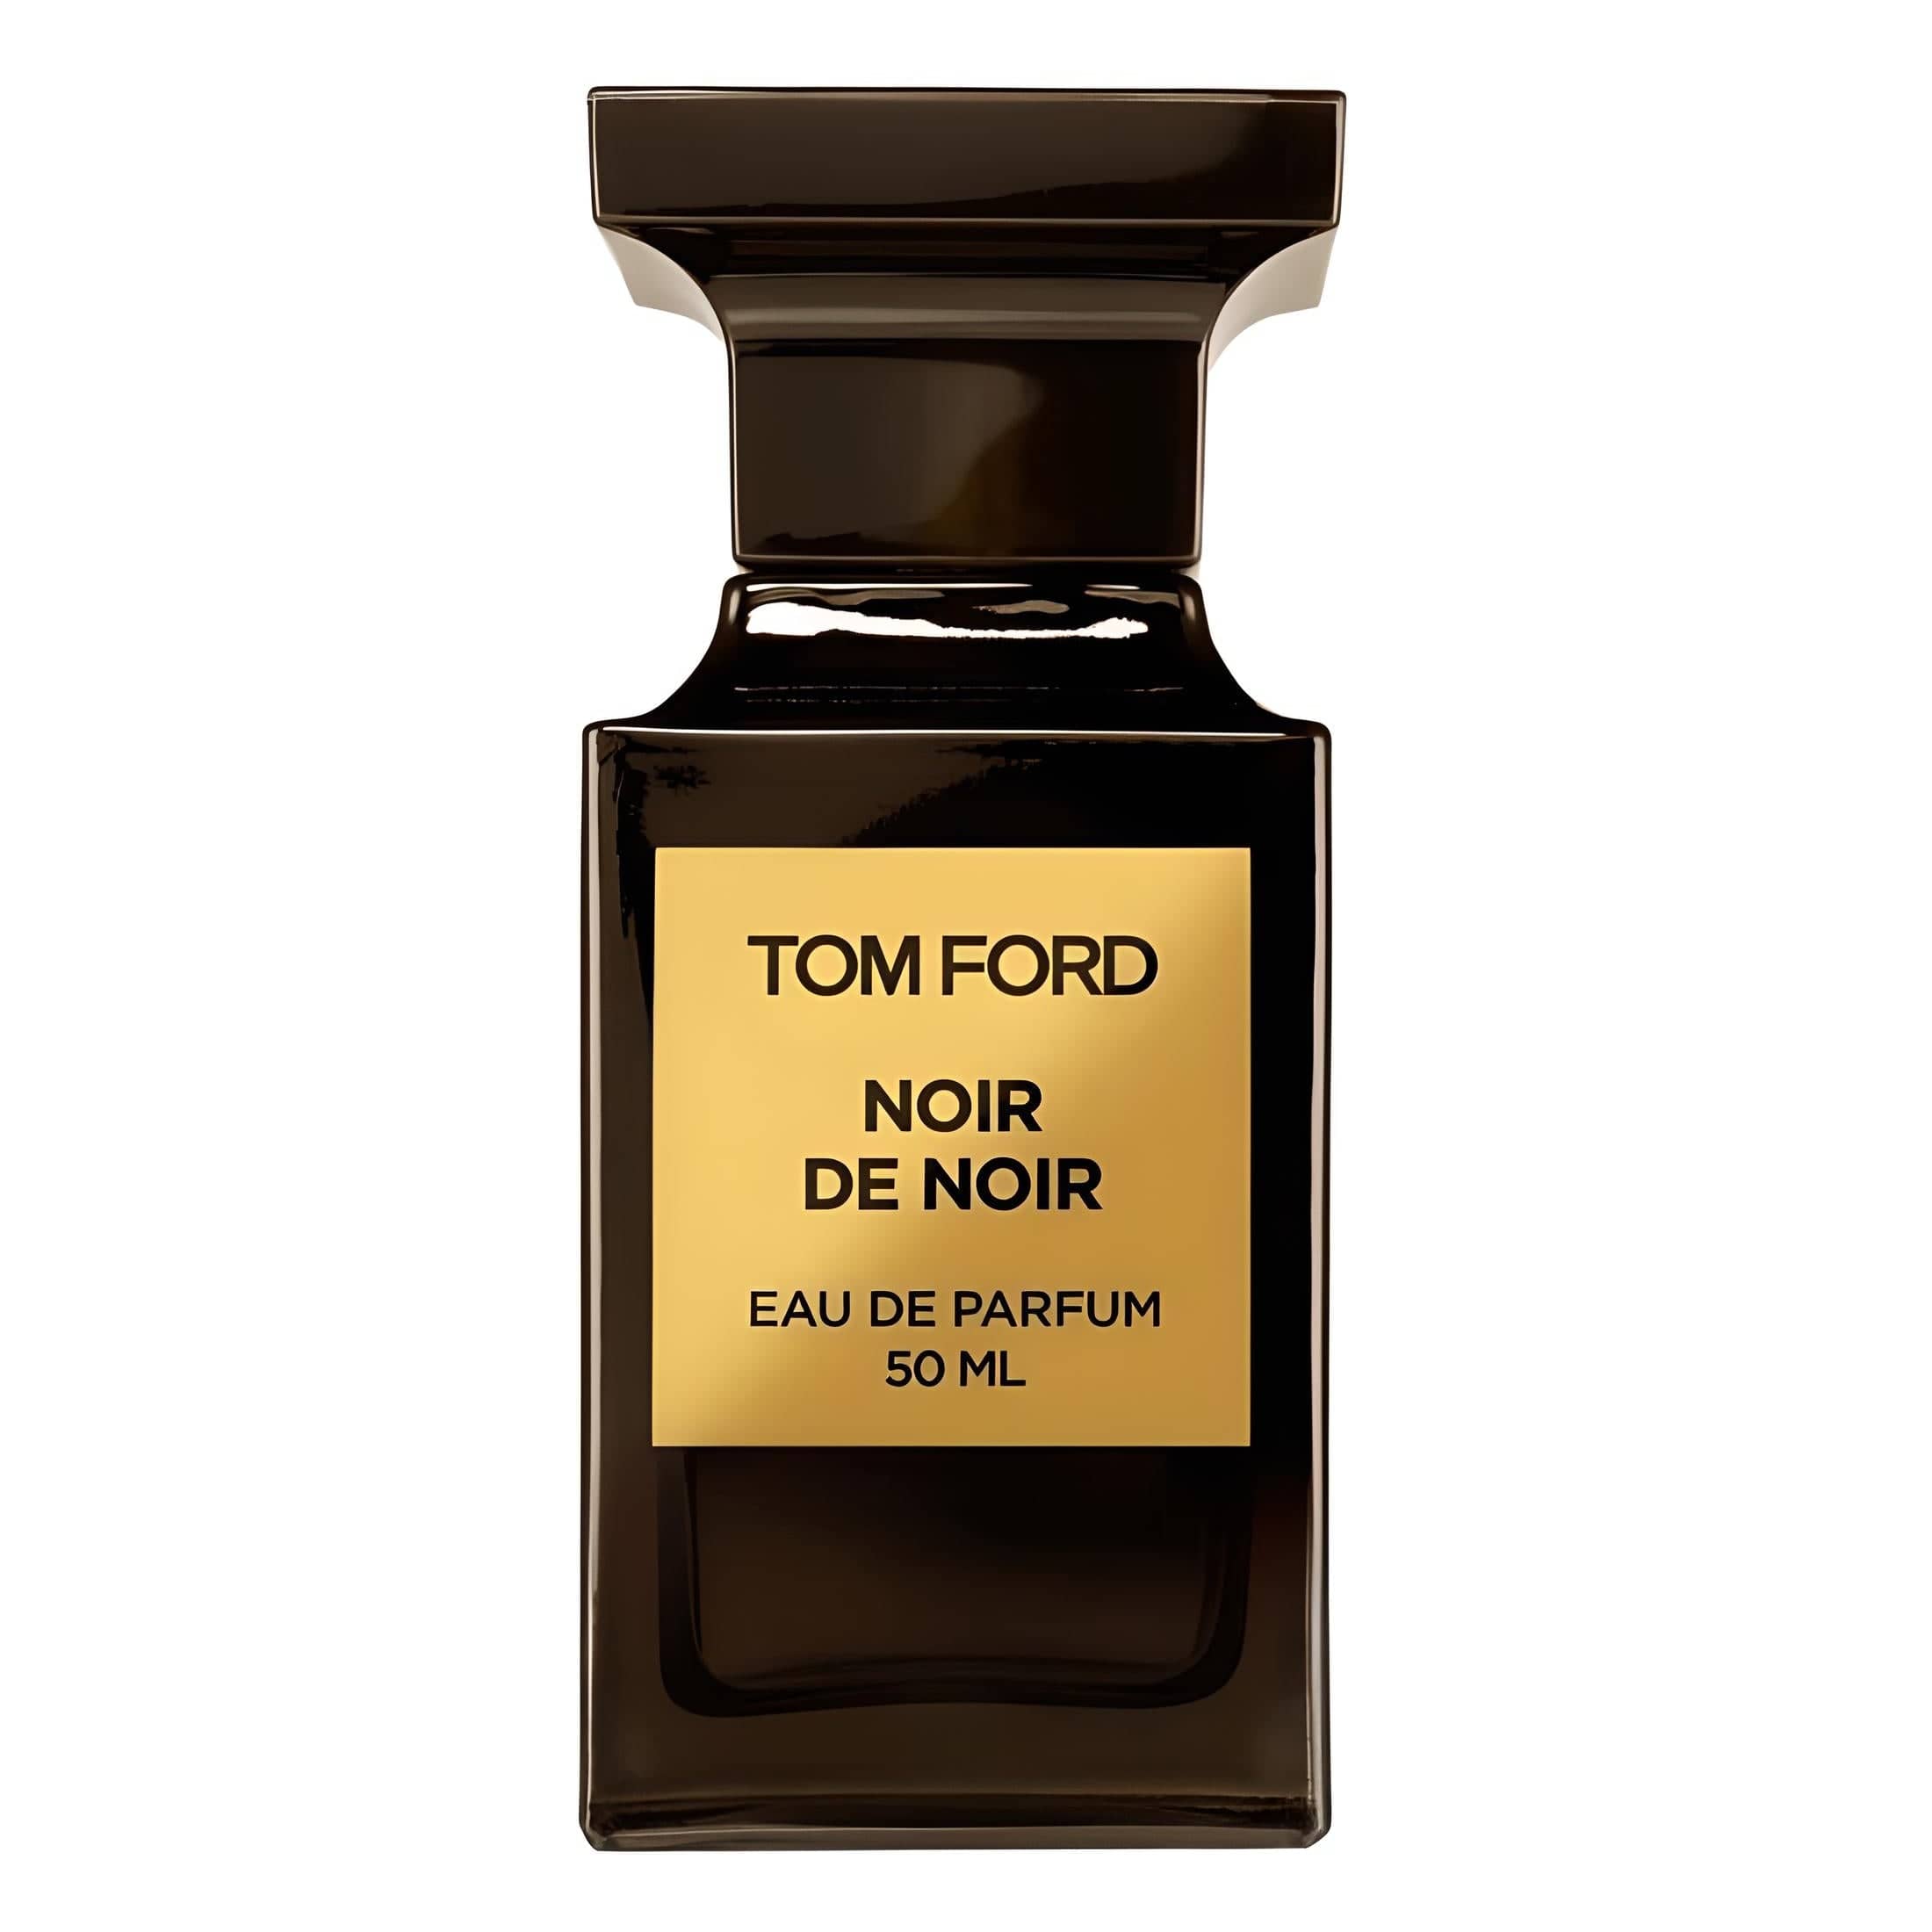 Noir de Noir Eau de Parfum Eau de Parfum TOM FORD   